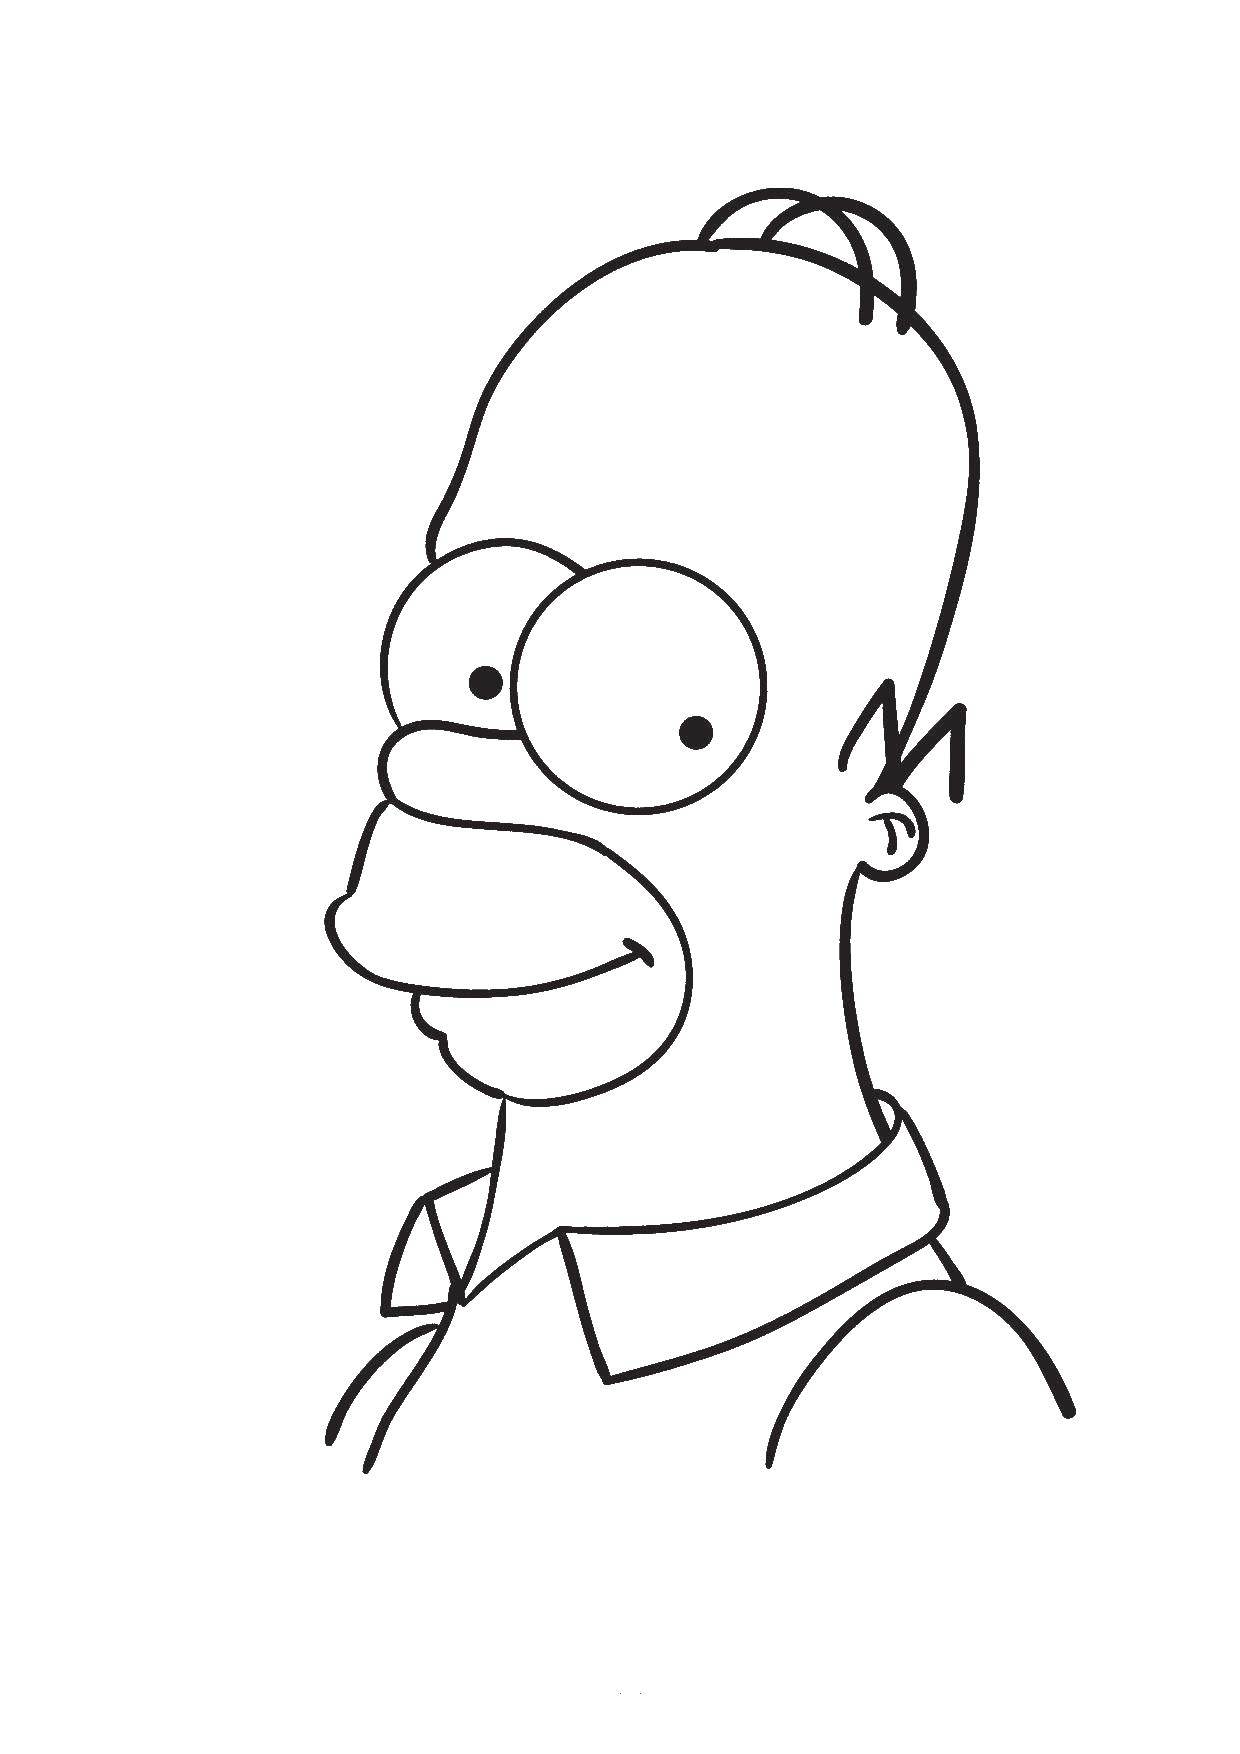 Название: Раскраска Гомер симпсон. Категория: мультфильмы. Теги: Персонаж из мультфильма, Симпсоны.